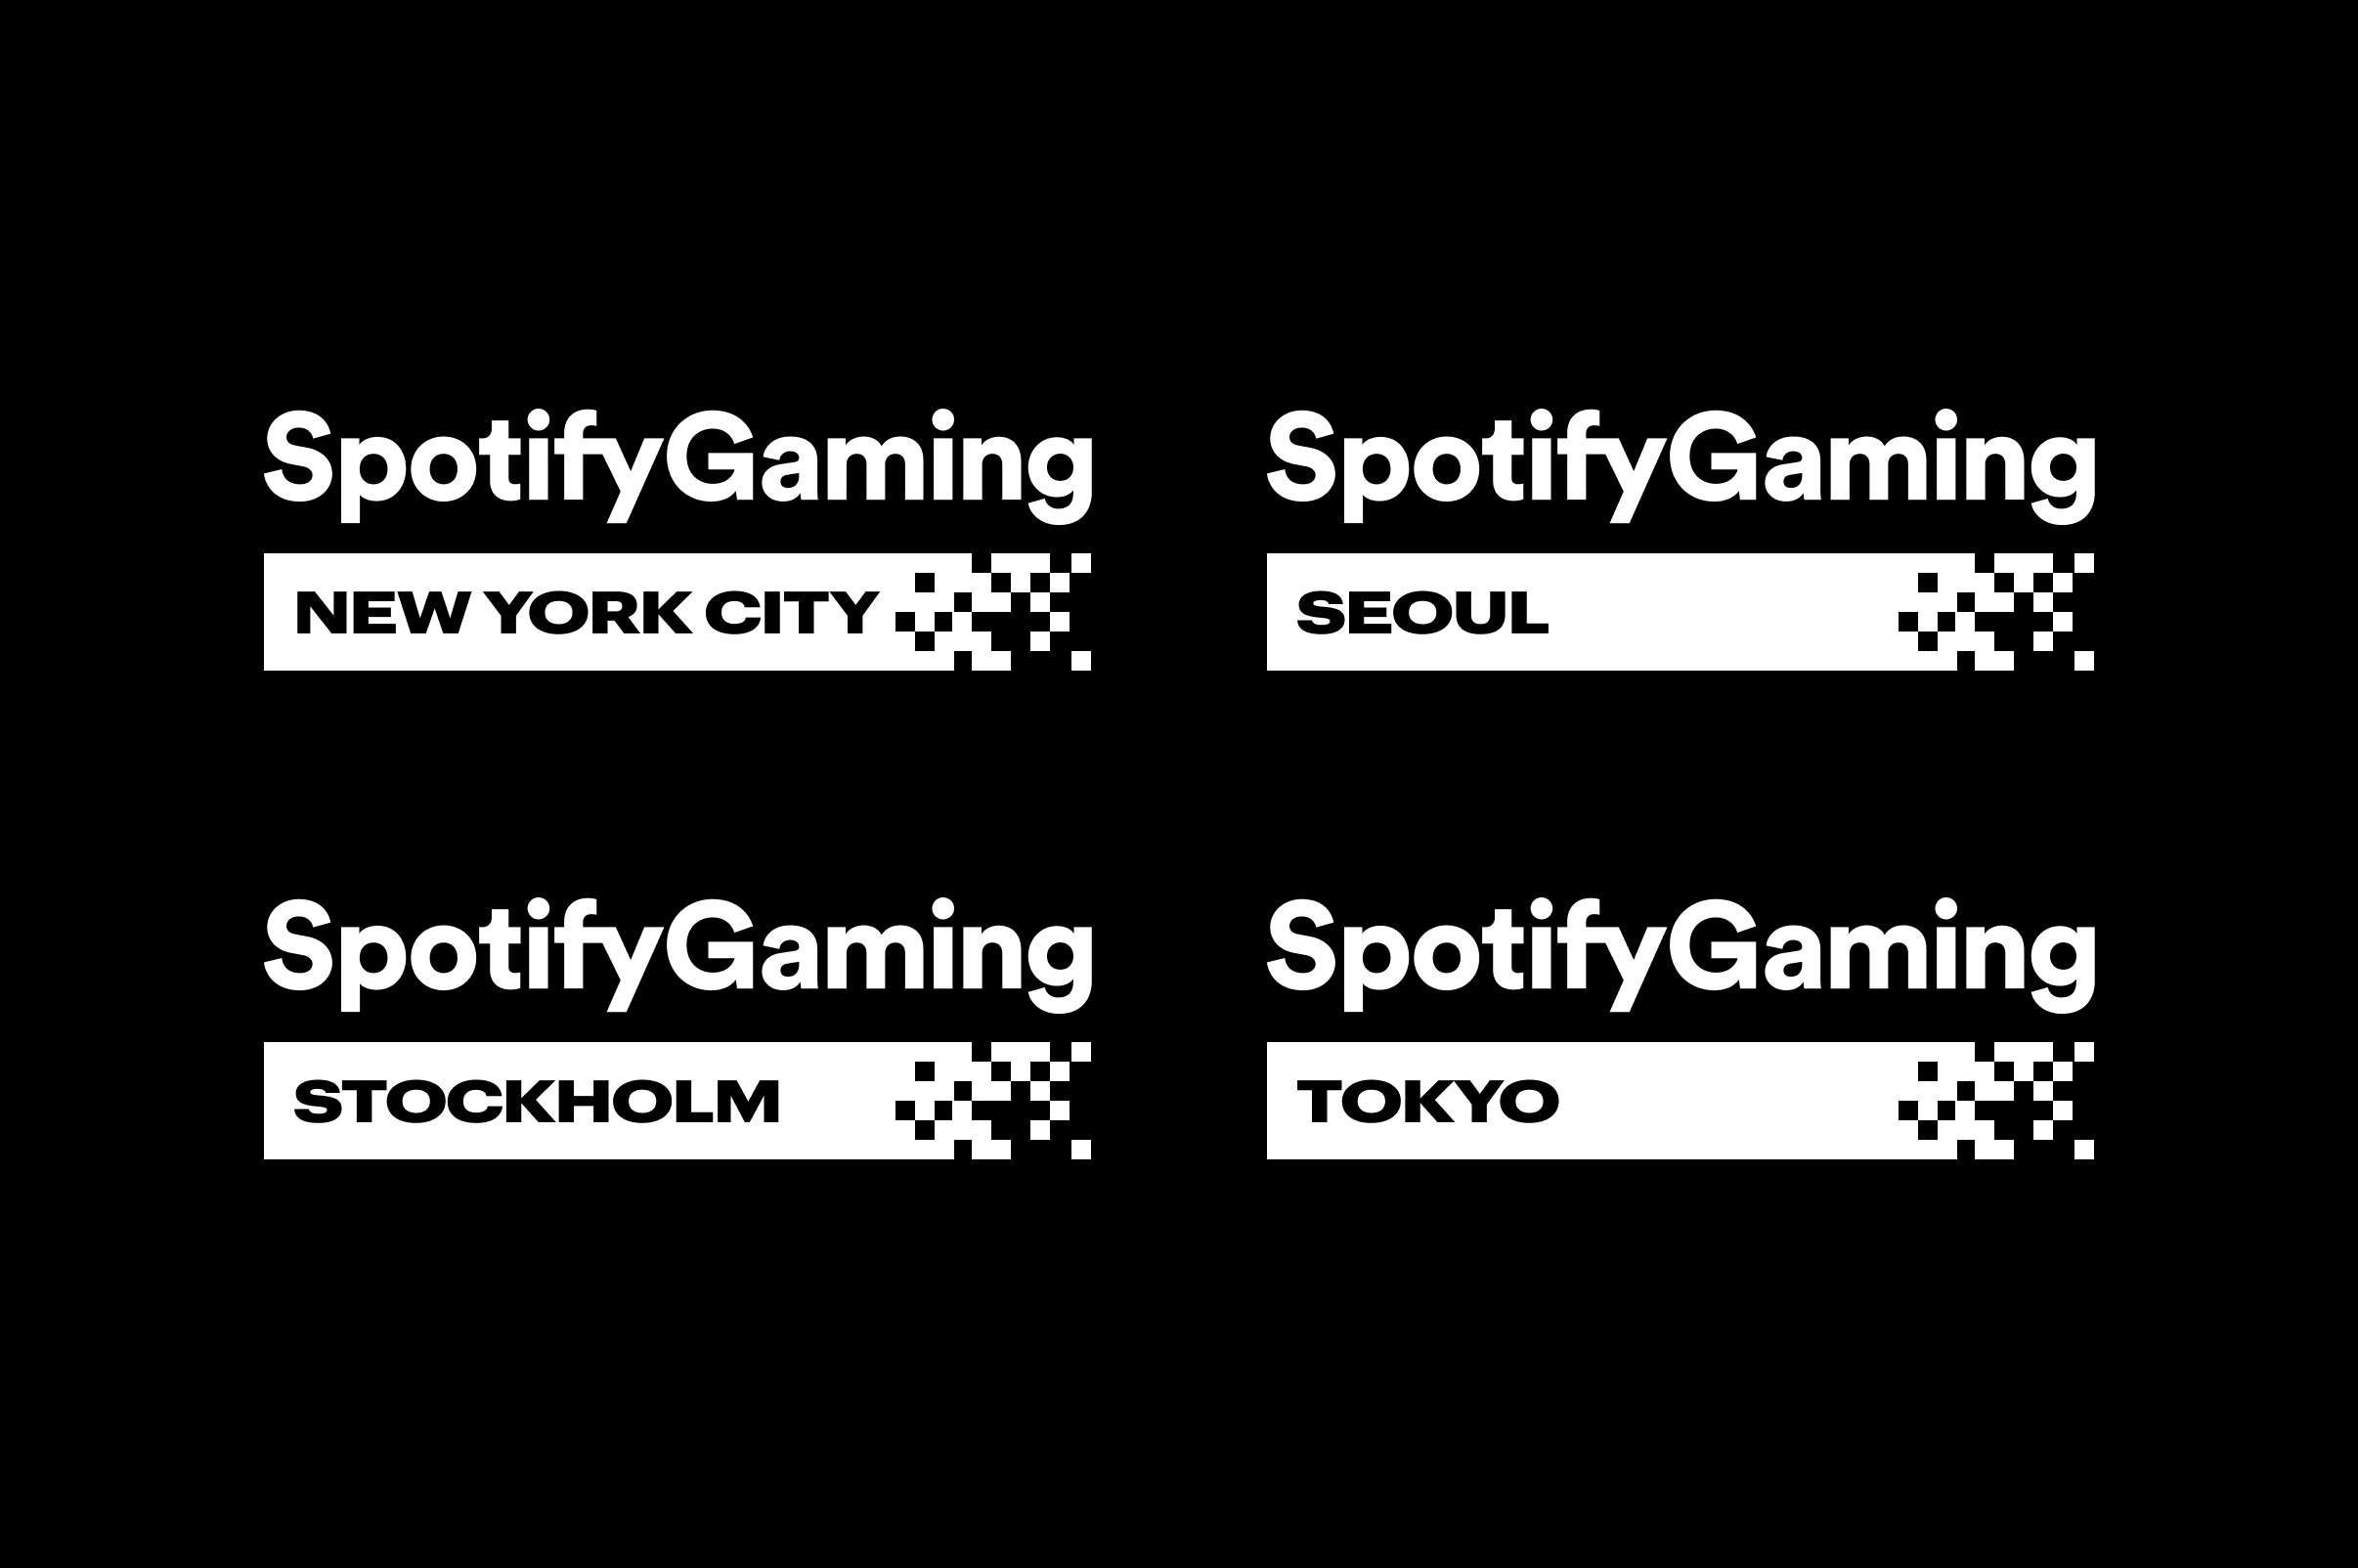 spotify-gaming-logo-2020@2x